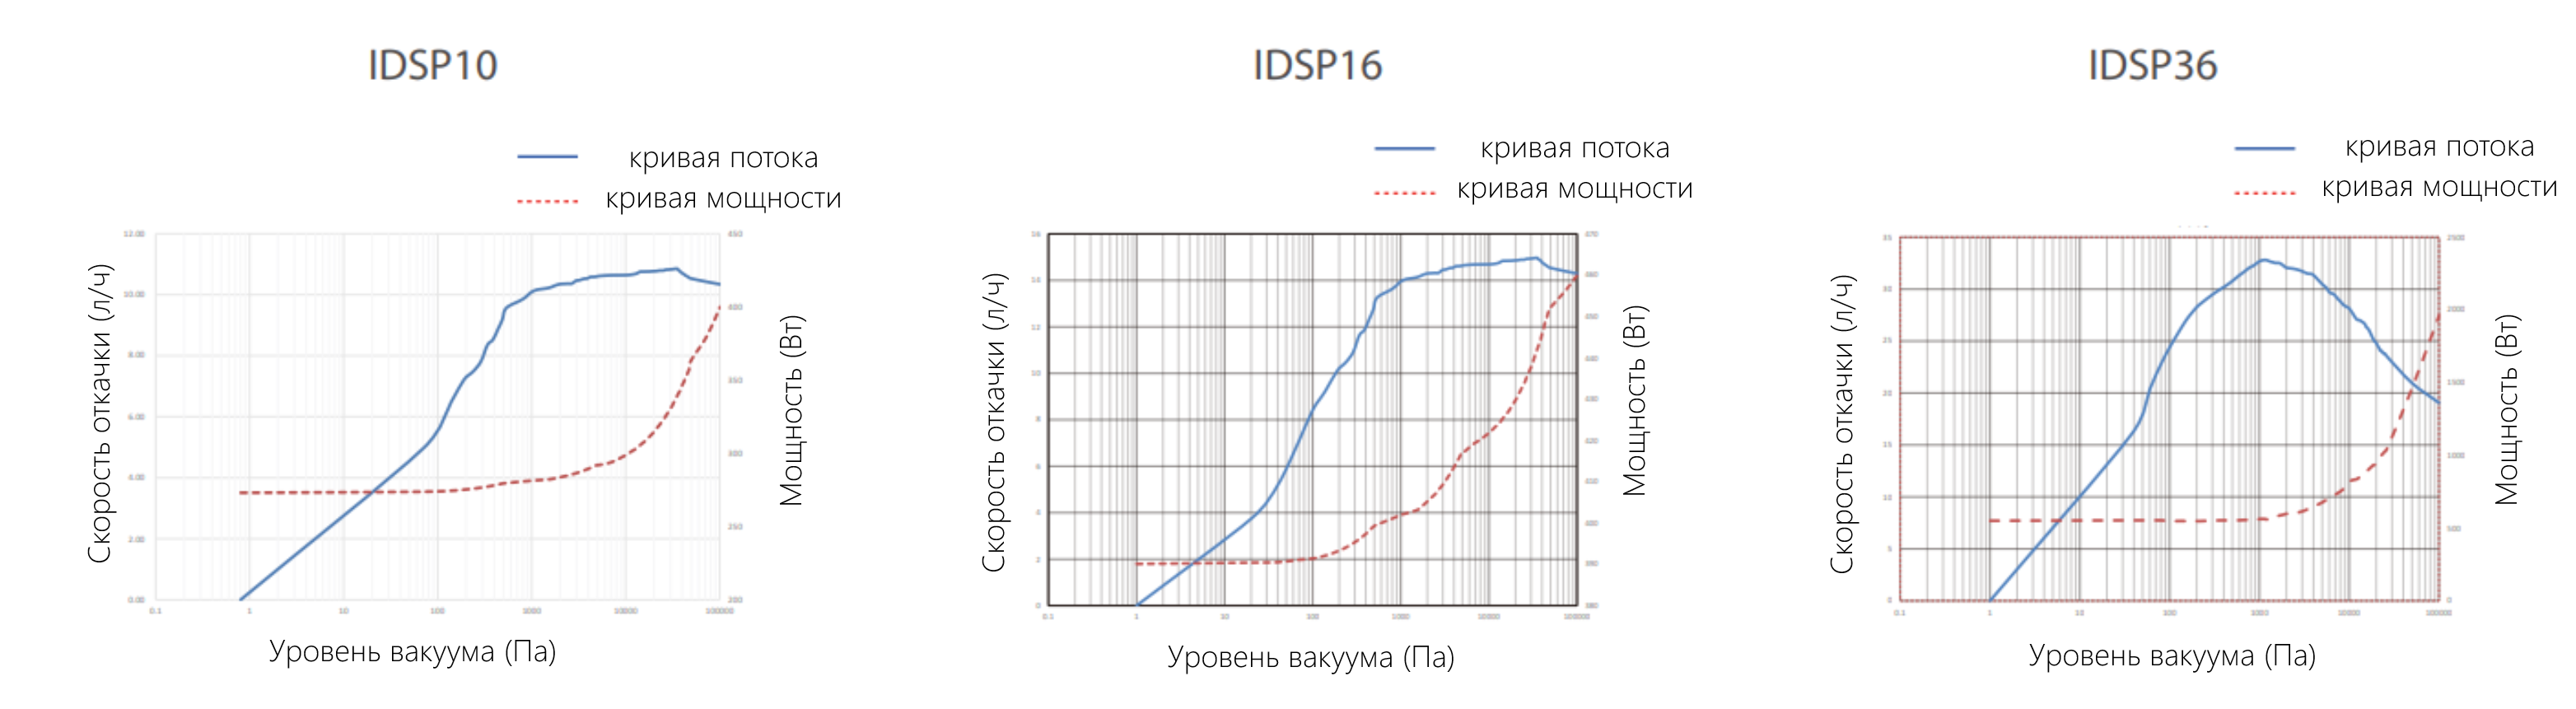 Производительность насосов Baosi cсерии IDSP